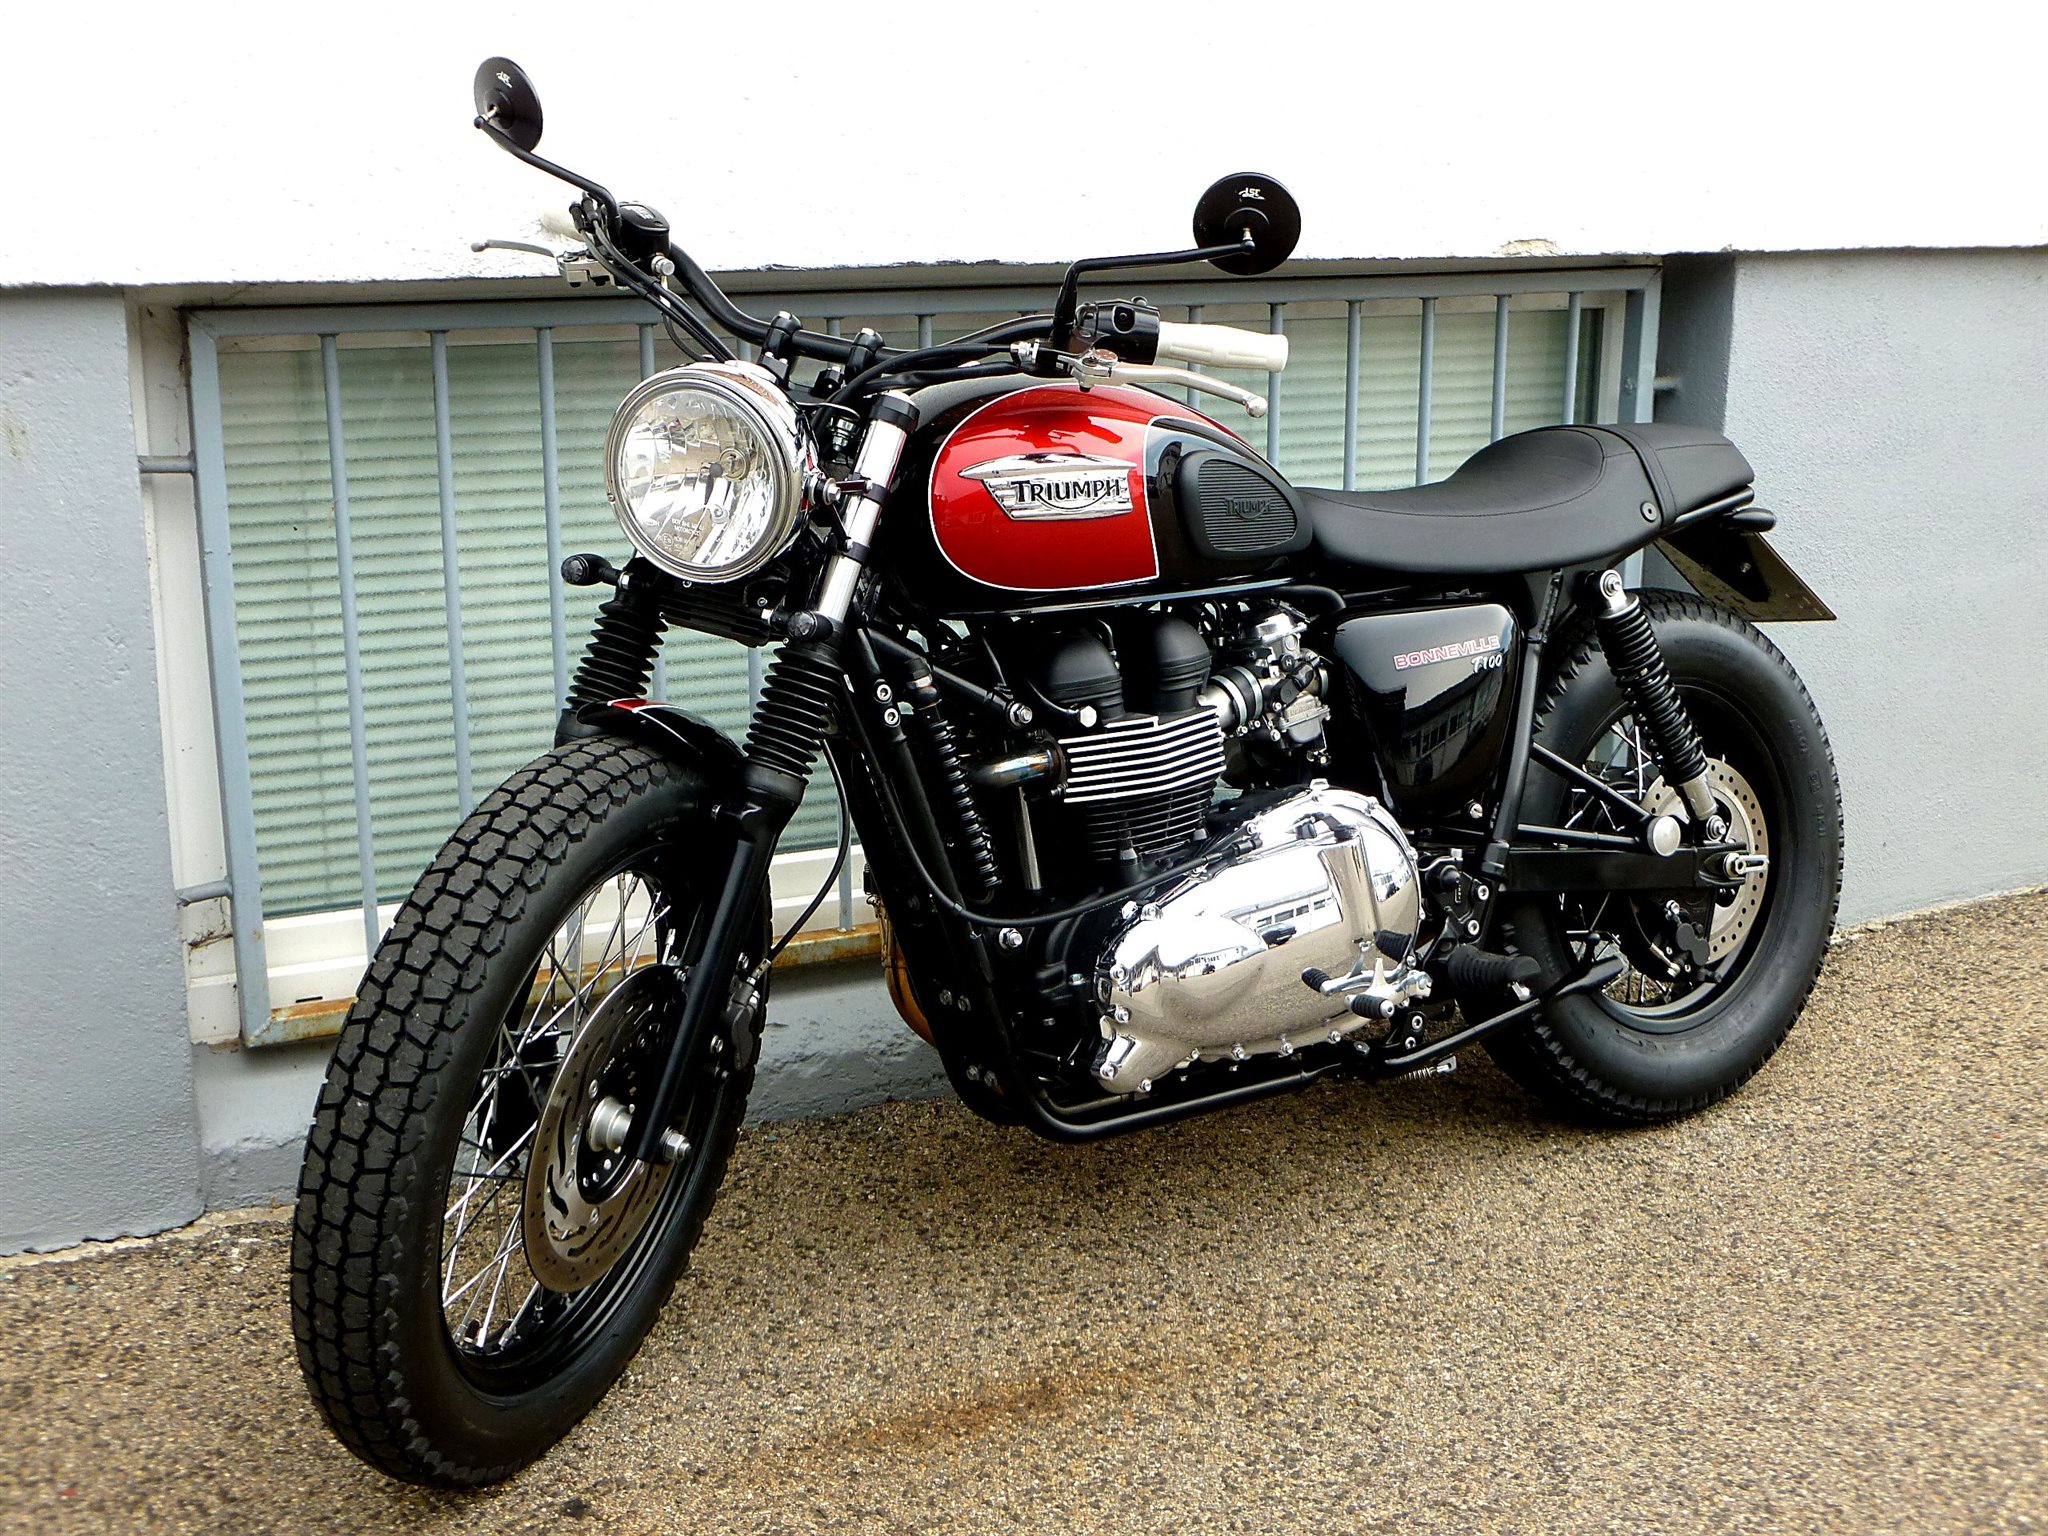 Details on the custom-Bike Triumph Bonneville T100 of dealer Triumph ...